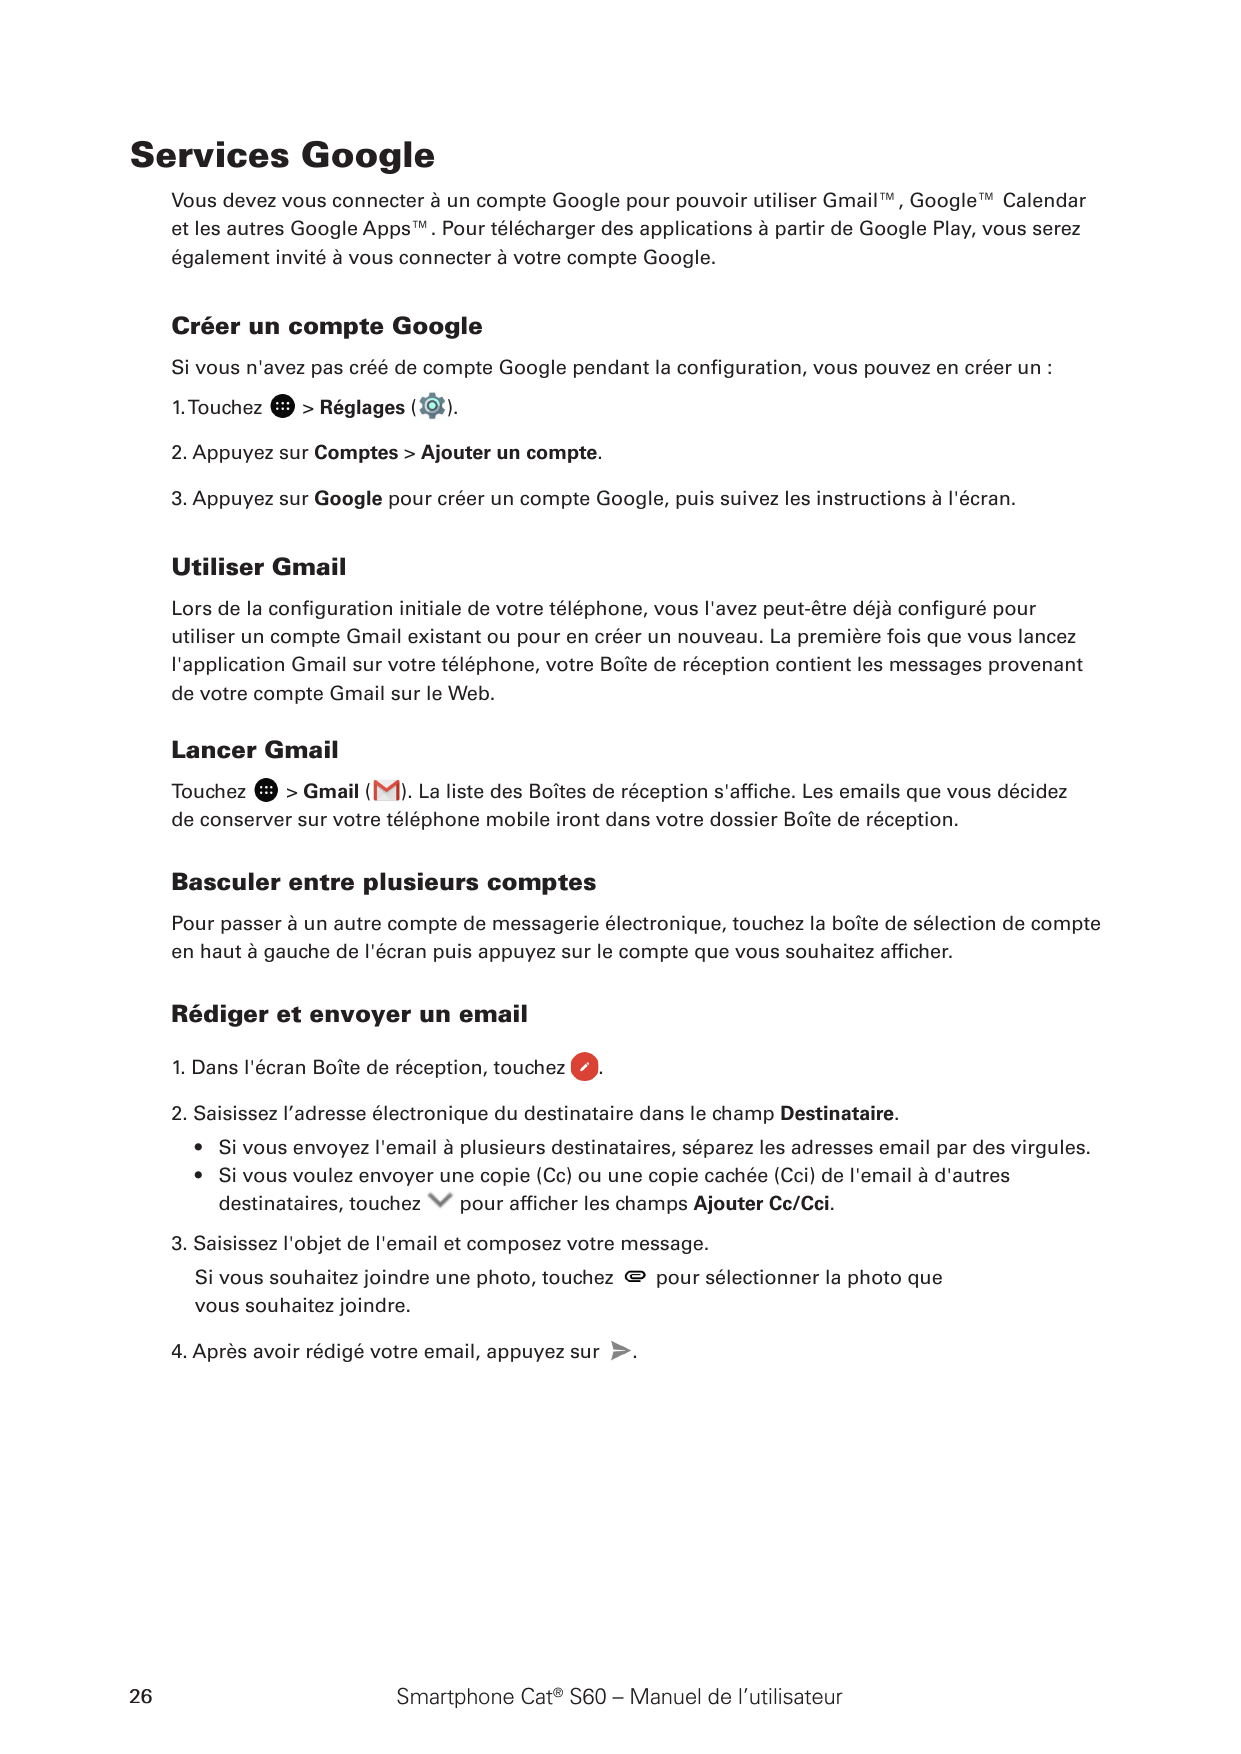 Services GoogleVous devez vous connecter à un compte Google pour pouvoir utiliser Gmail™, Google™ Calendaret les autres Google A